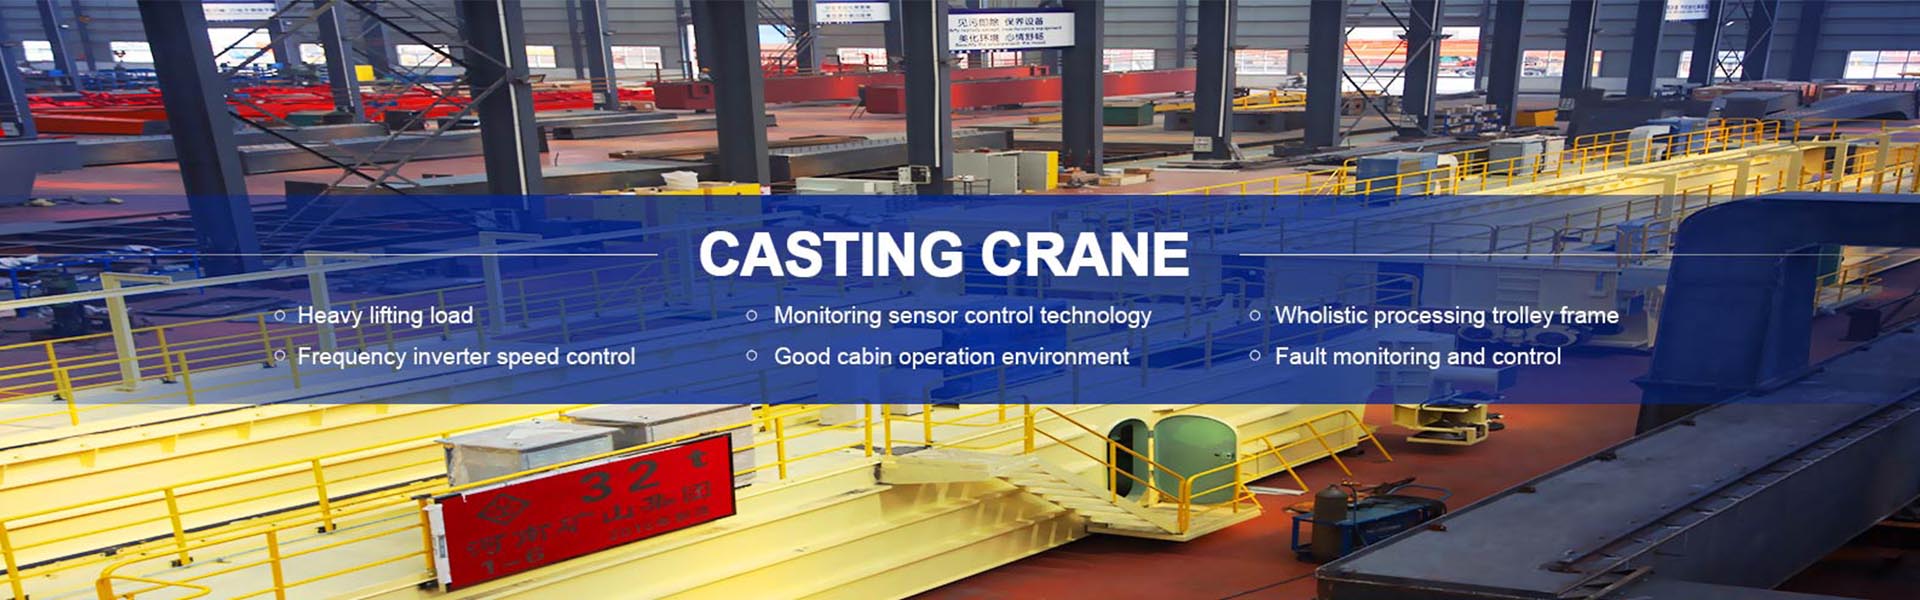 Henan Mine Crane Co., Ltd